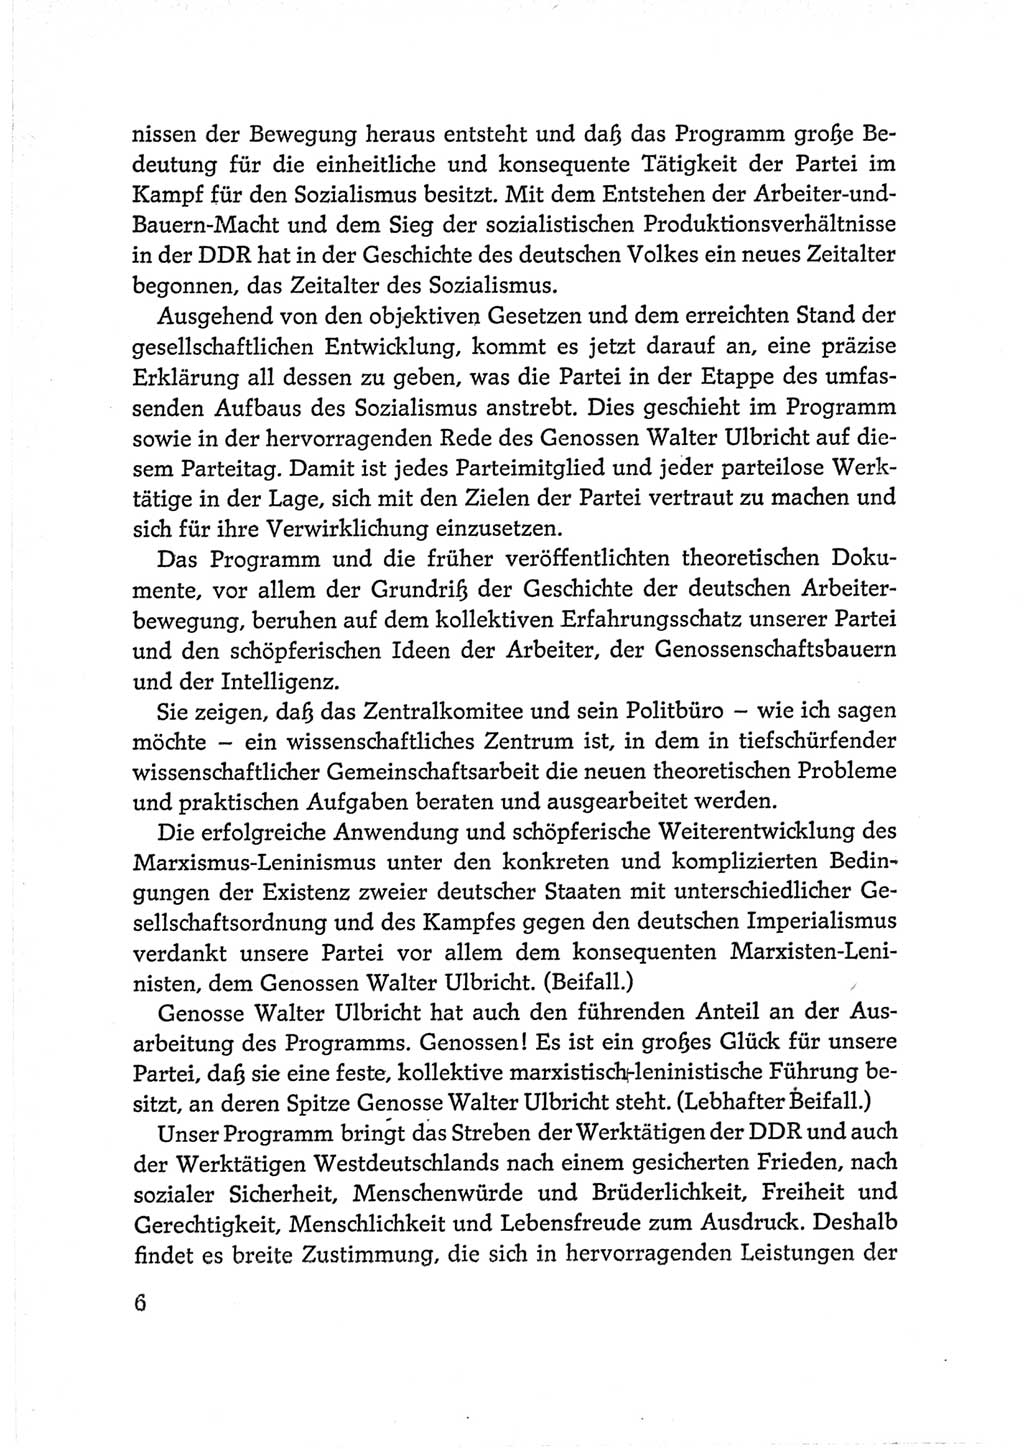 Protokoll der Verhandlungen des Ⅵ. Parteitages der Sozialistischen Einheitspartei Deutschlands (SED) [Deutsche Demokratische Republik (DDR)] 1963, Band Ⅱ, Seite 6 (Prot. Verh. Ⅵ. PT SED DDR 1963, Bd. Ⅱ, S. 6)